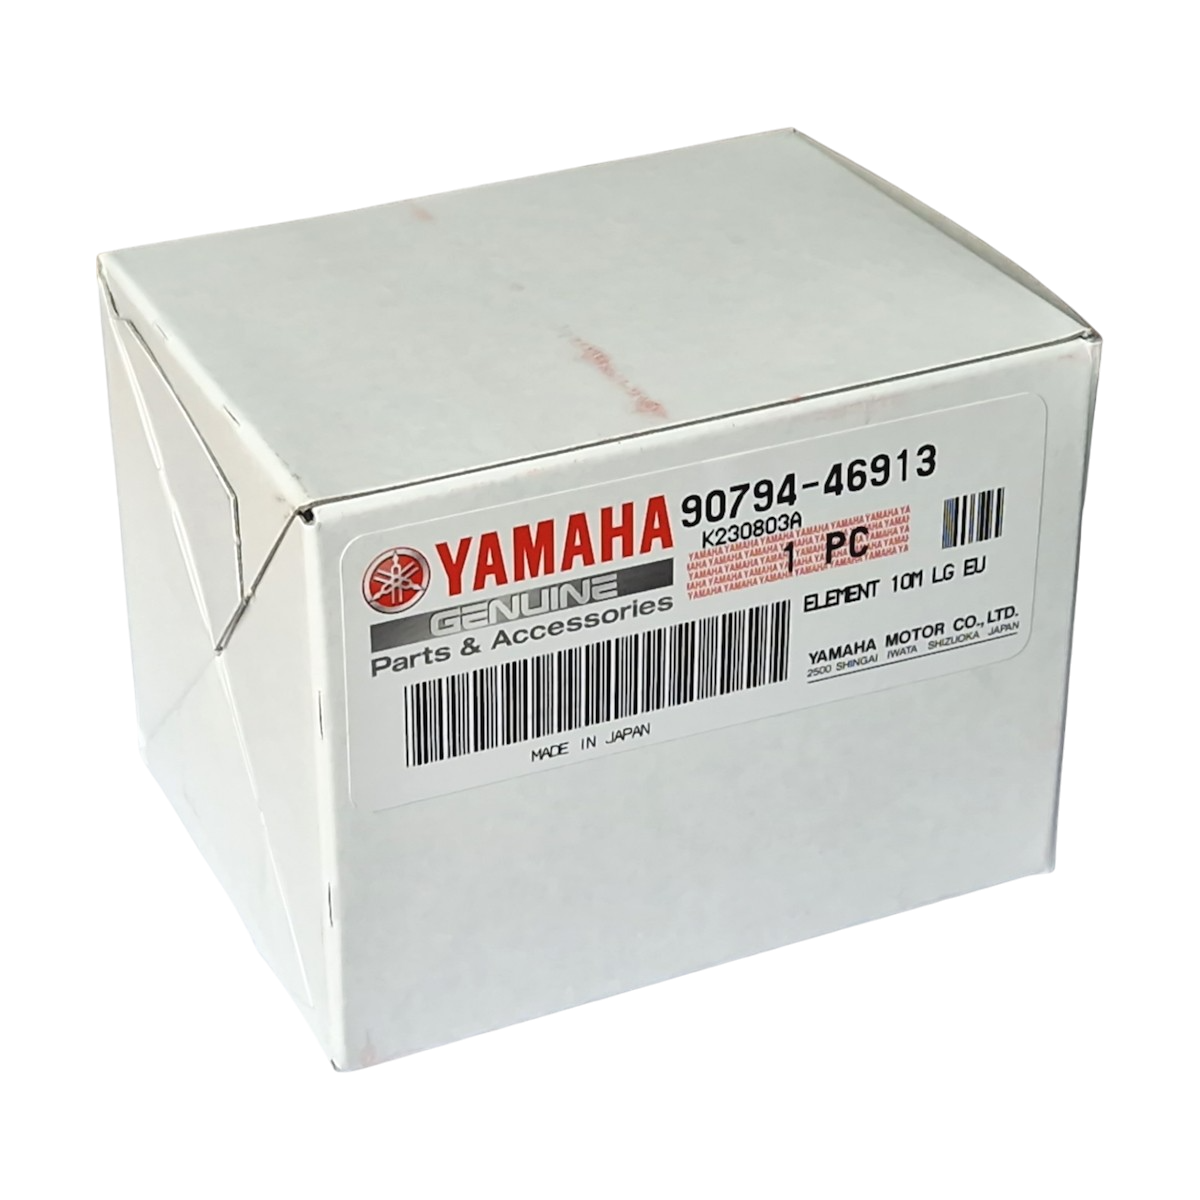 Yamaha Fuel Filter - 90794-46913